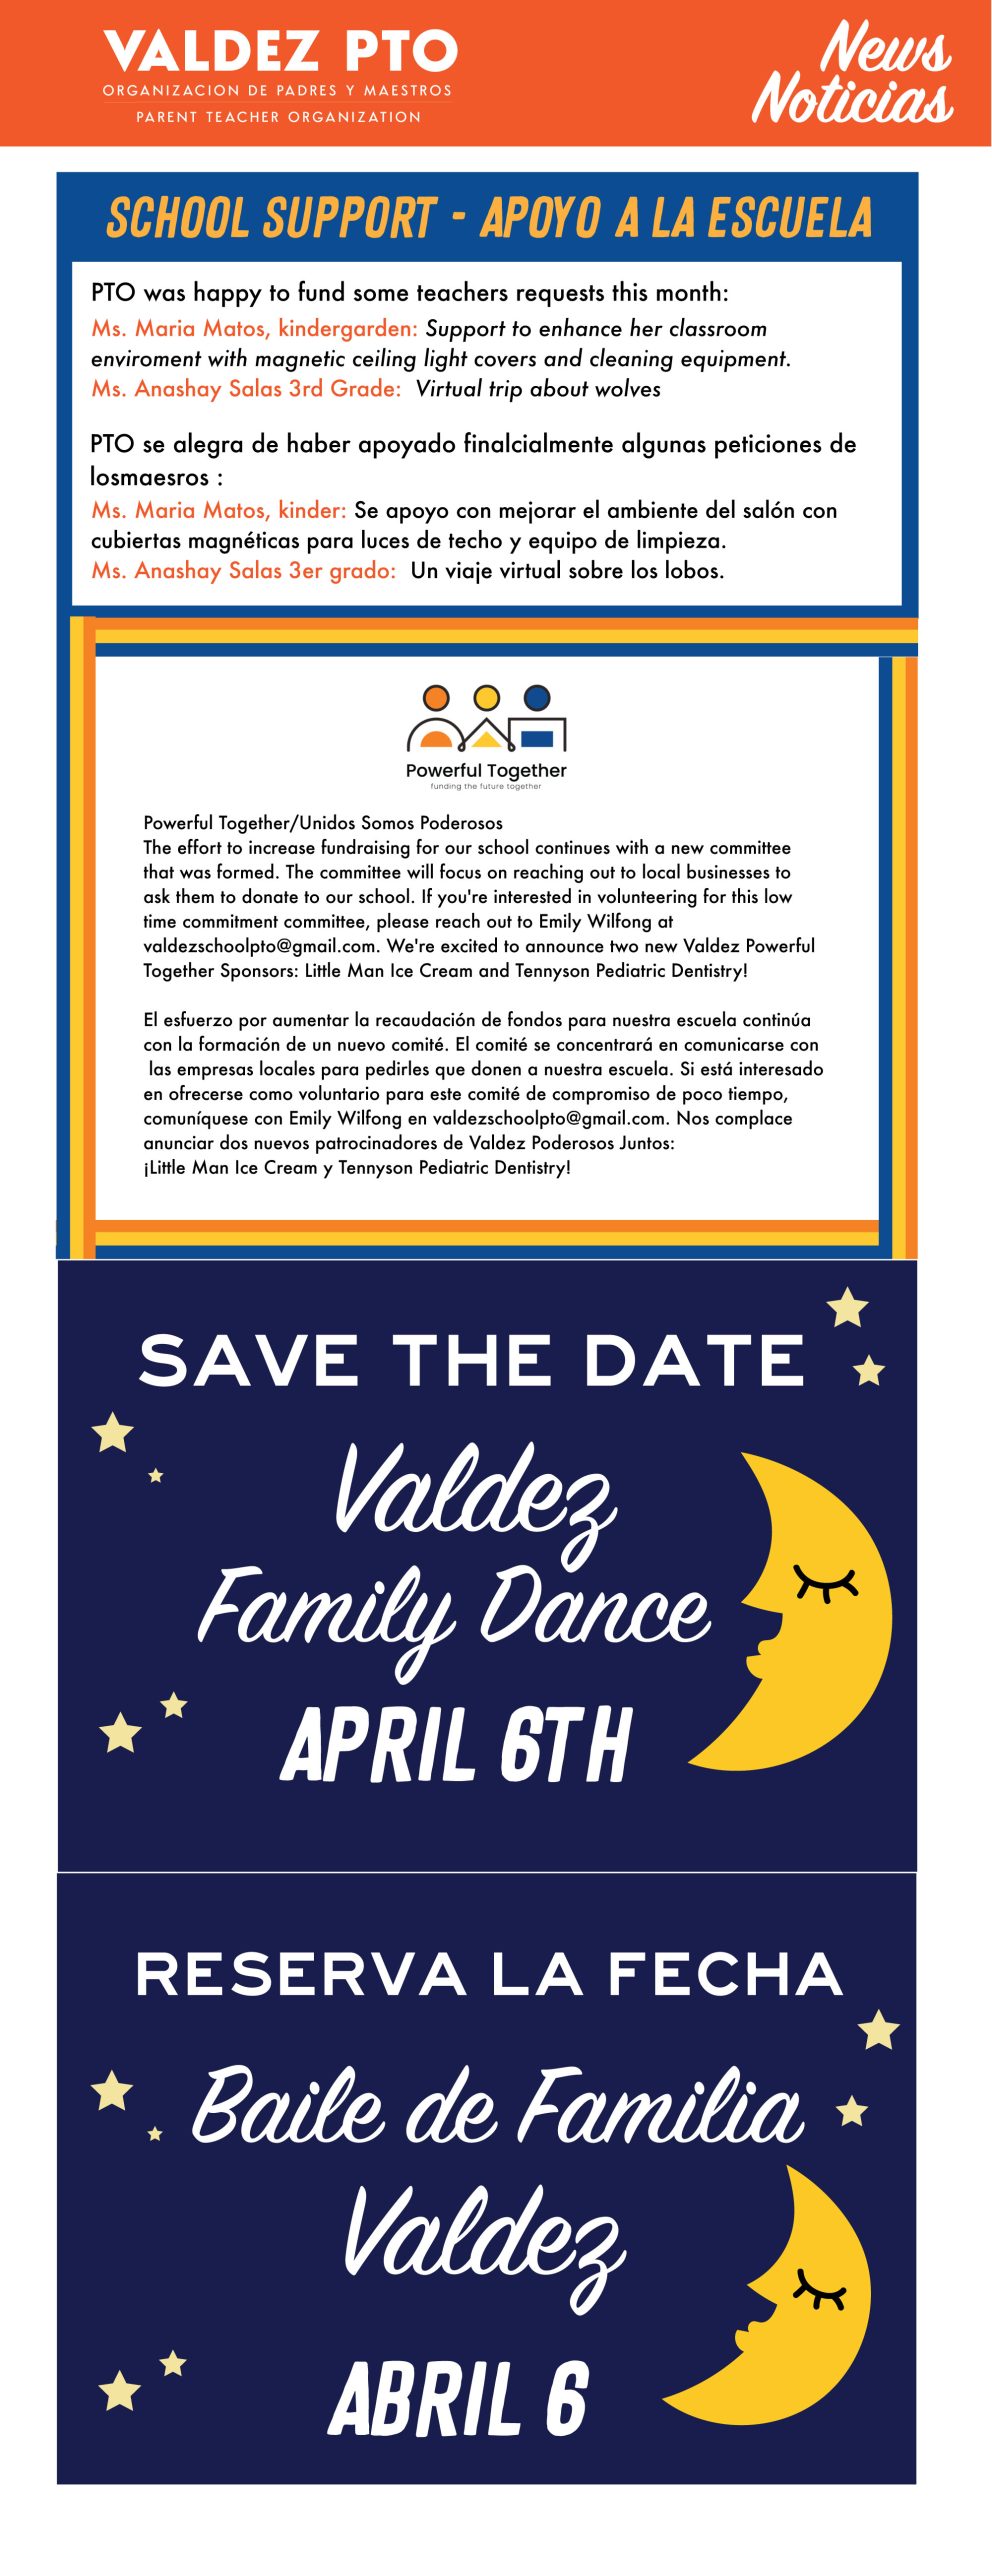 Orange top banner says, "Valdez PTO News/Noticias." Blue background with white text says, "Save the Date: Valdez Family Dance April 6th" and "Reserva la Fecha: Baile de Familia Valdez el 6 de abril."  